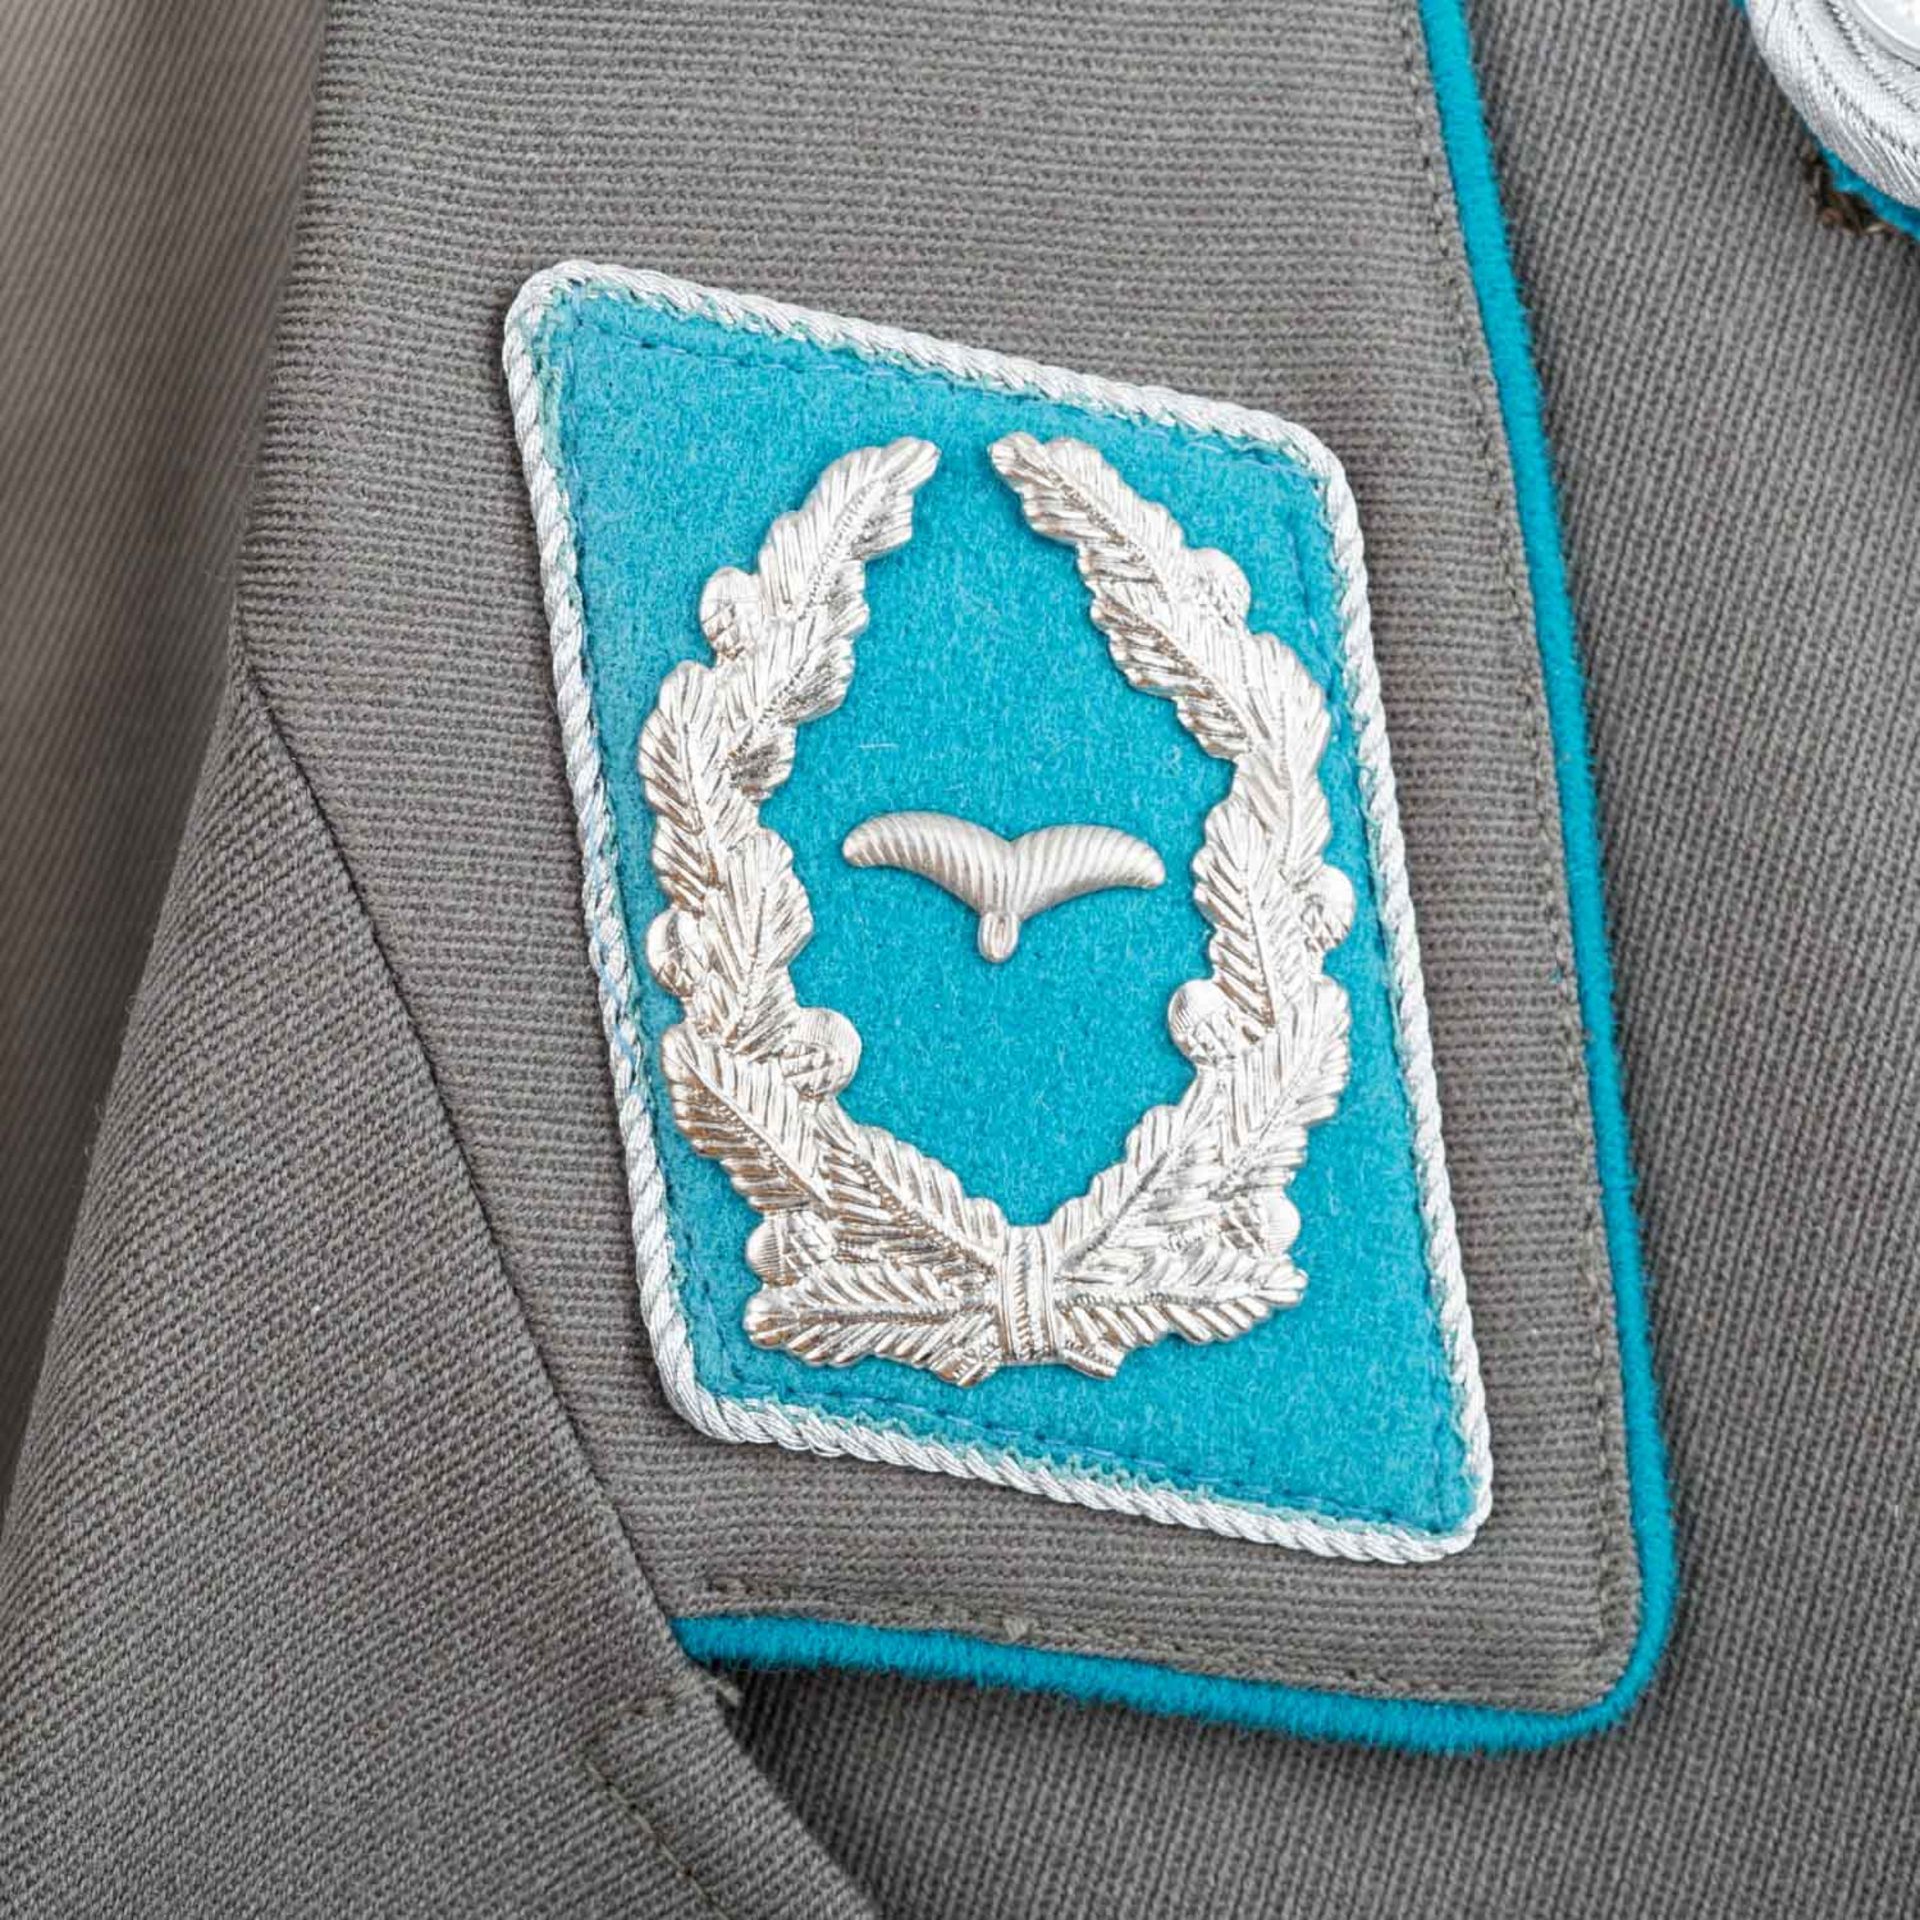 Uniformen - Dienstjacke der Nationalen Volksarmee - Bild 4 aus 6